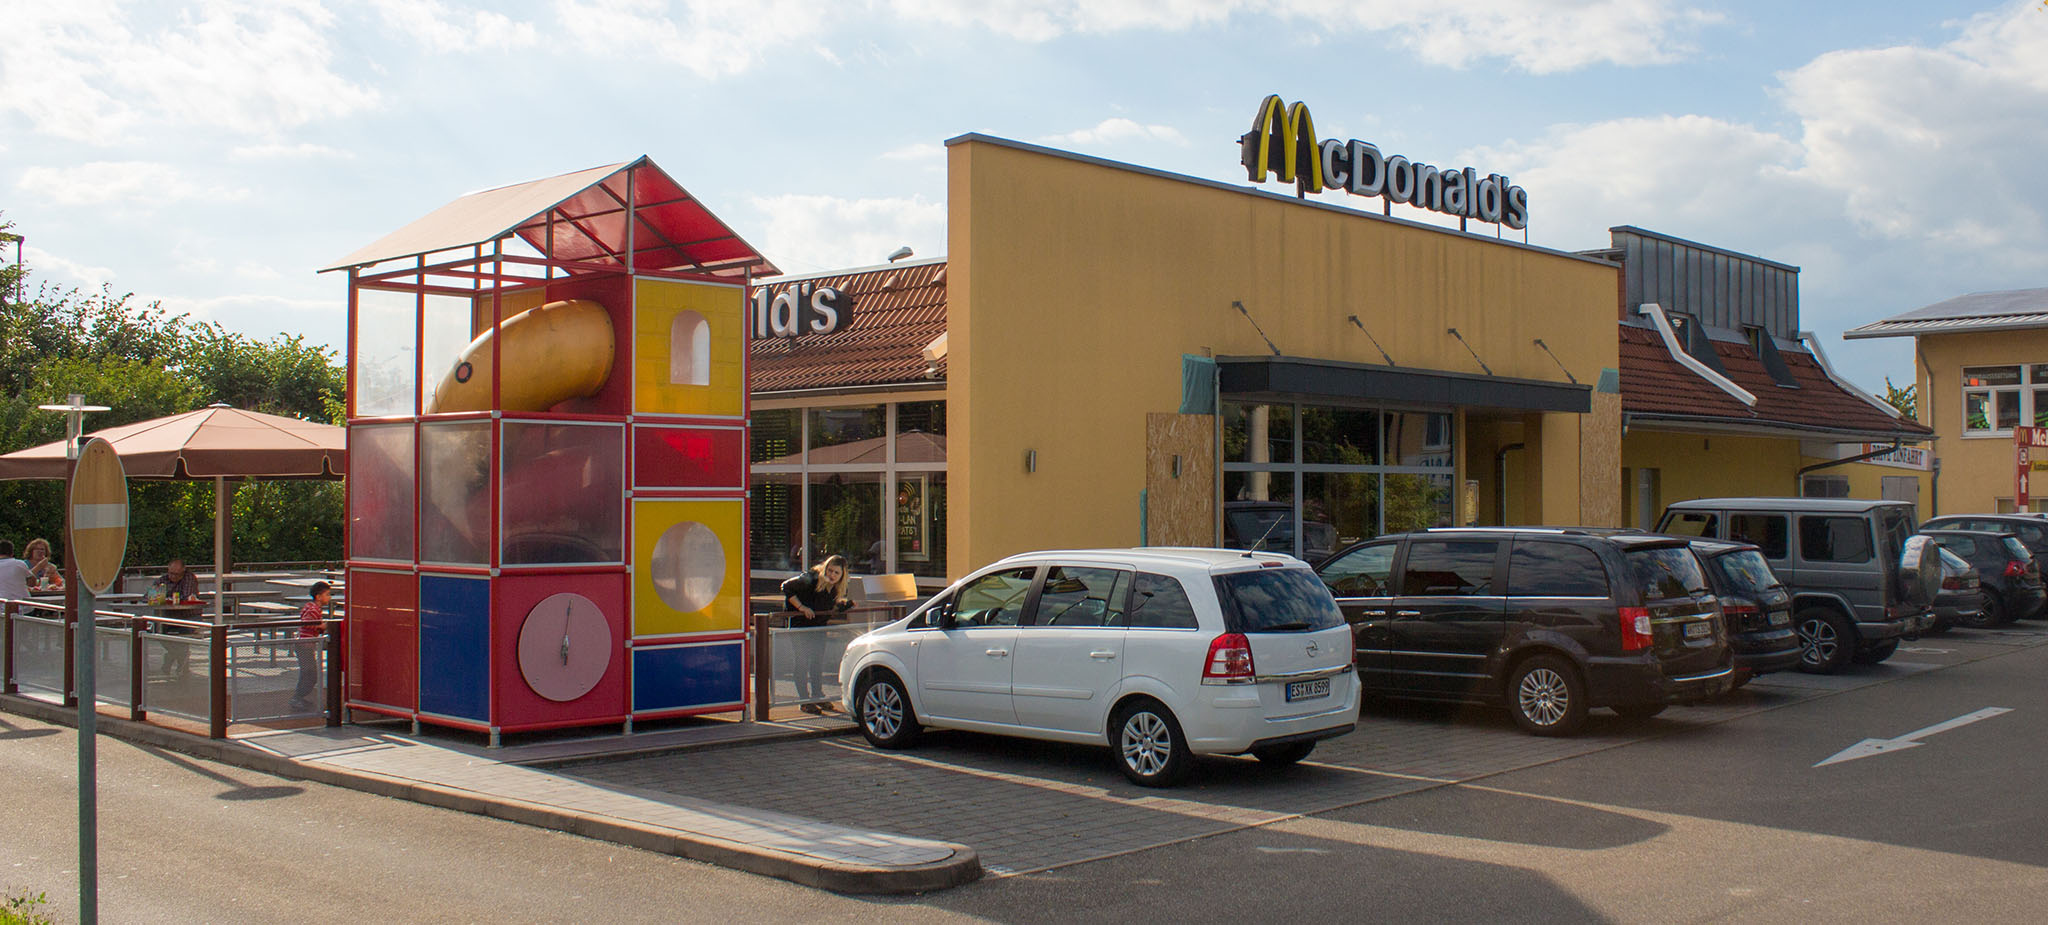 Das McDonald’s-Restaurant in Weinstadt